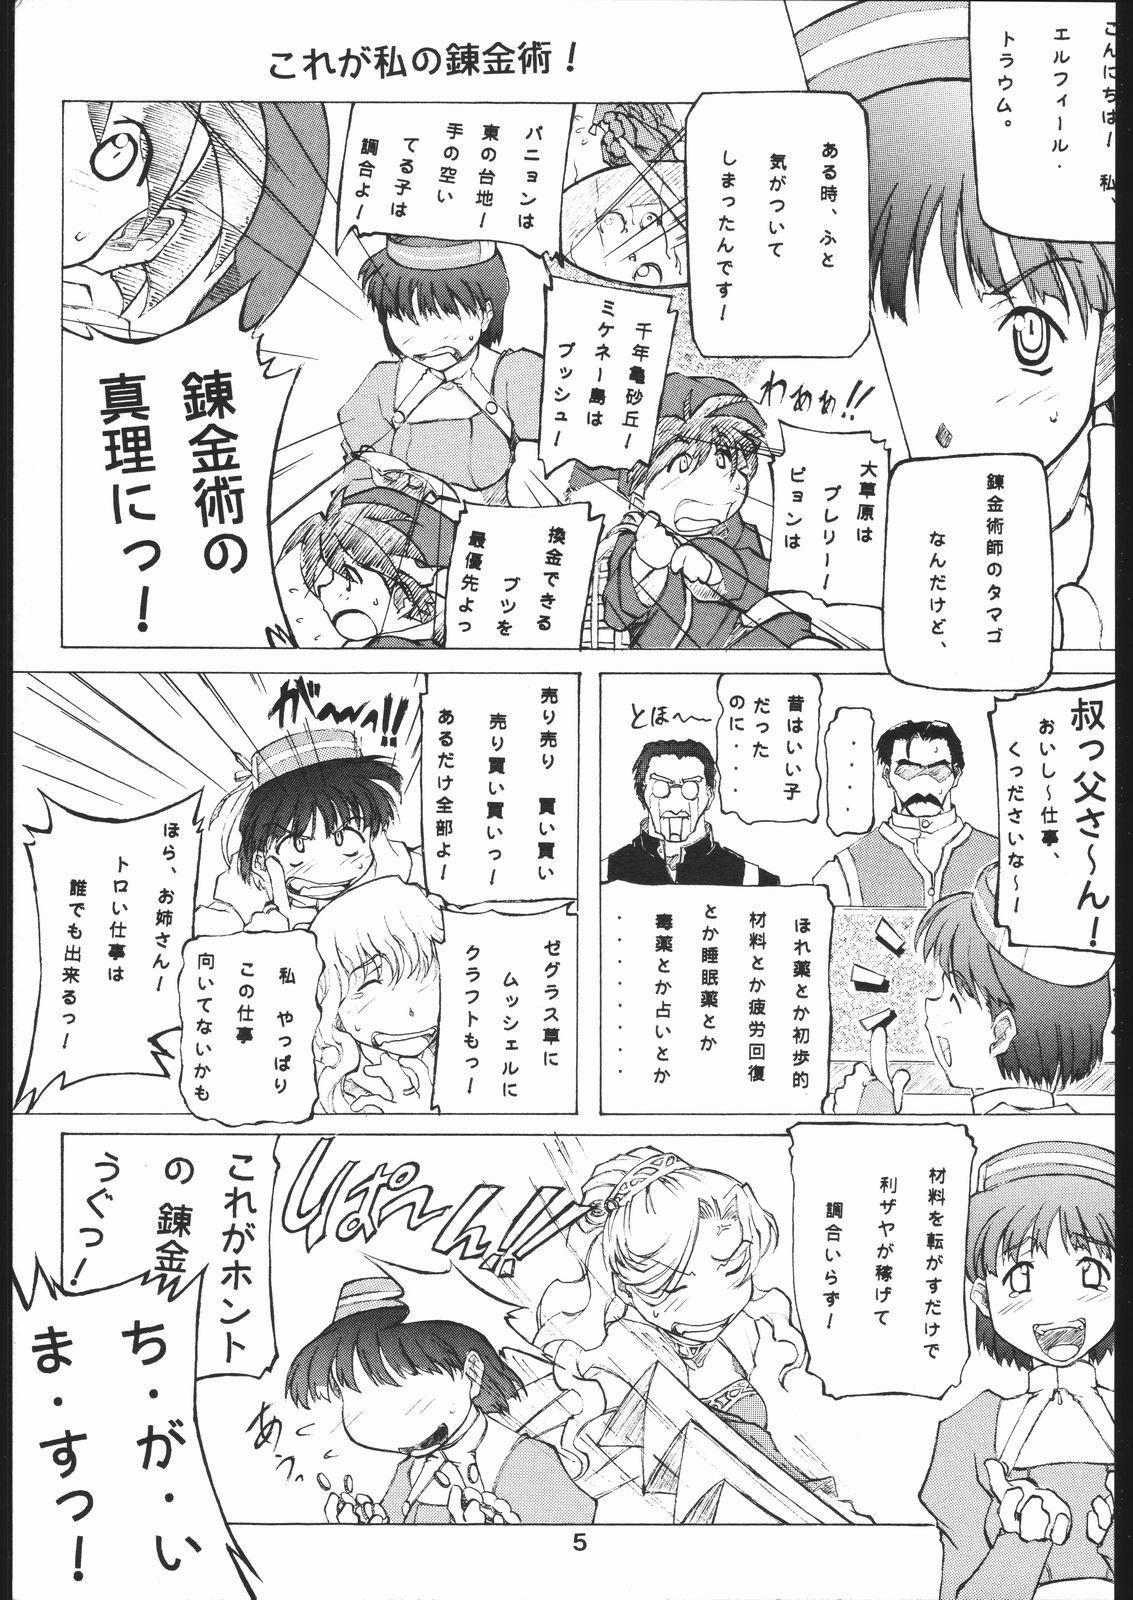 Mallu yoru no renkinjyutsu Chica - Page 4